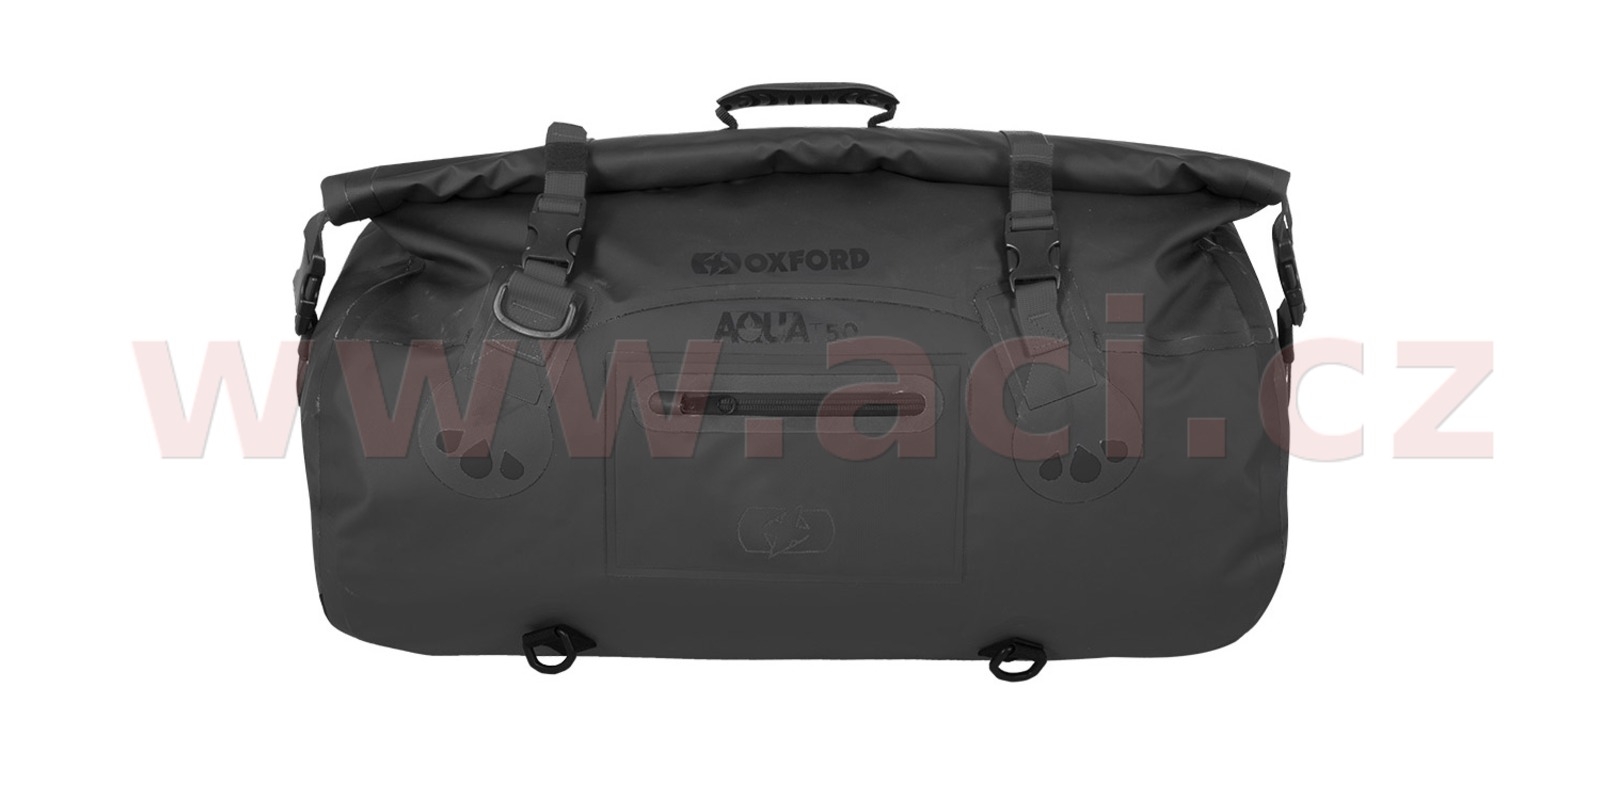 Obrázek produktu OXFORD Aqua T-50 Roll Bag Black 50L OL452